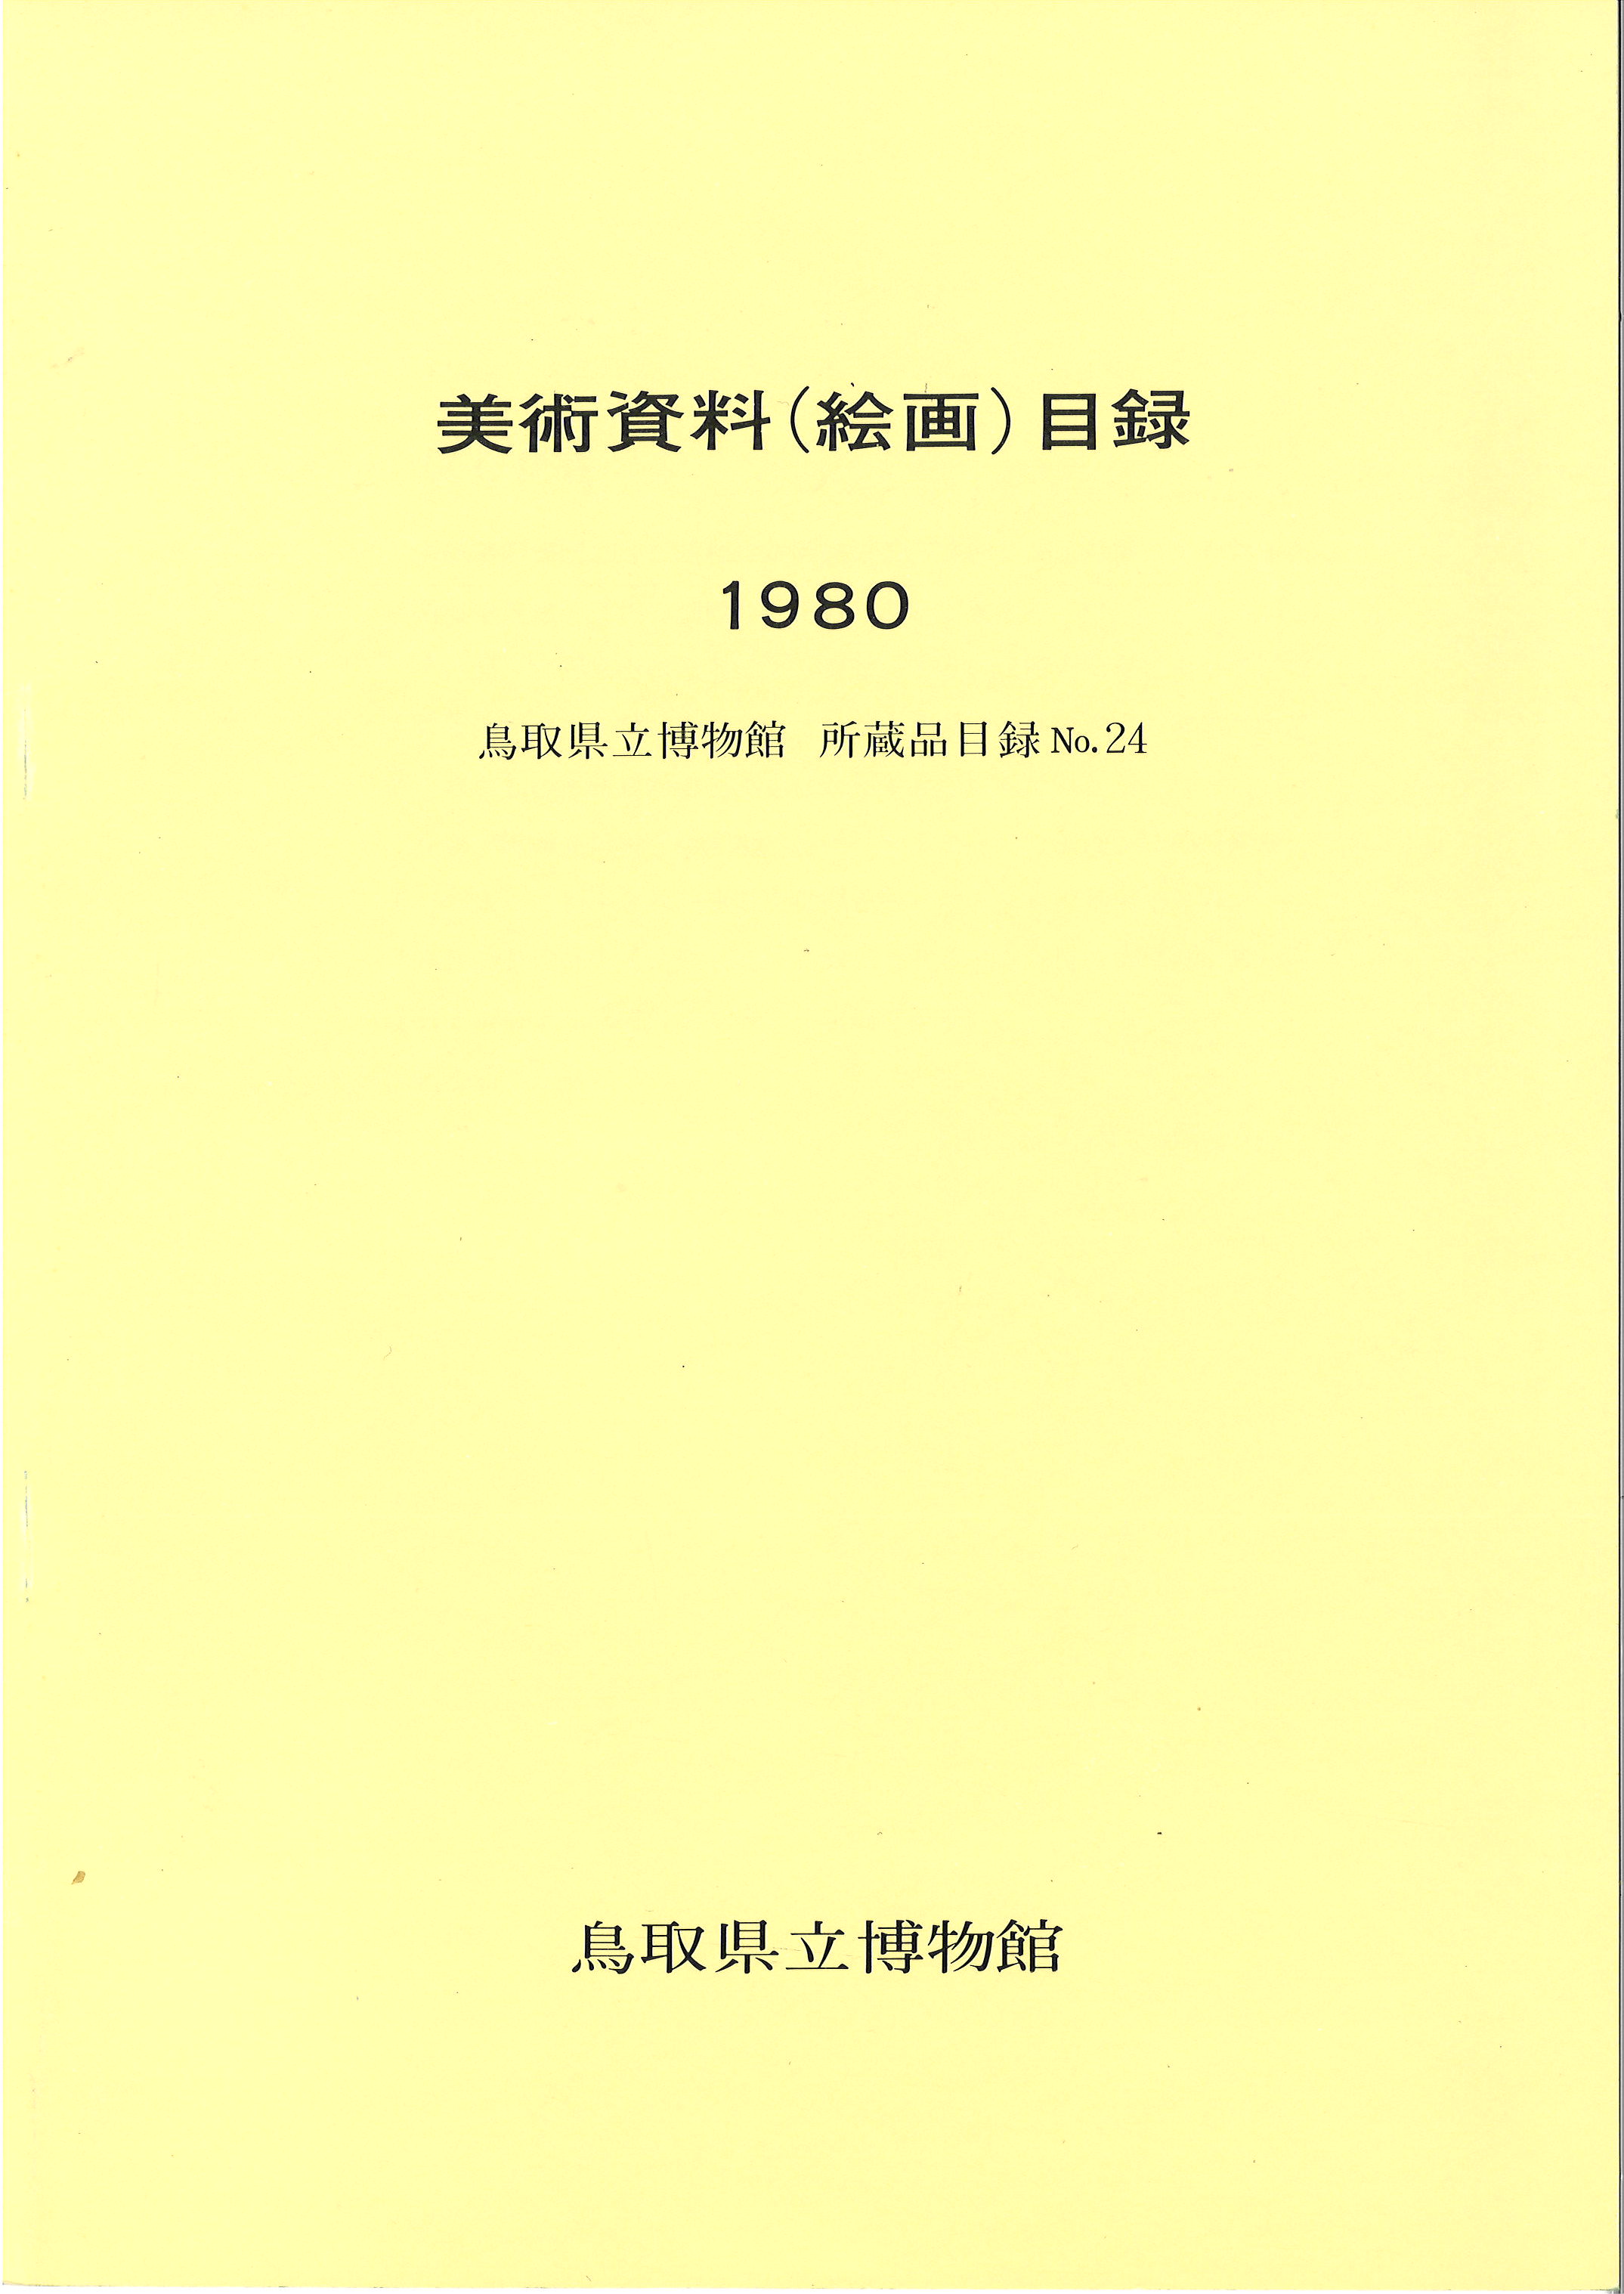 美術資料(絵画)目録1980鳥取県立博物館所蔵品目録No.24表紙